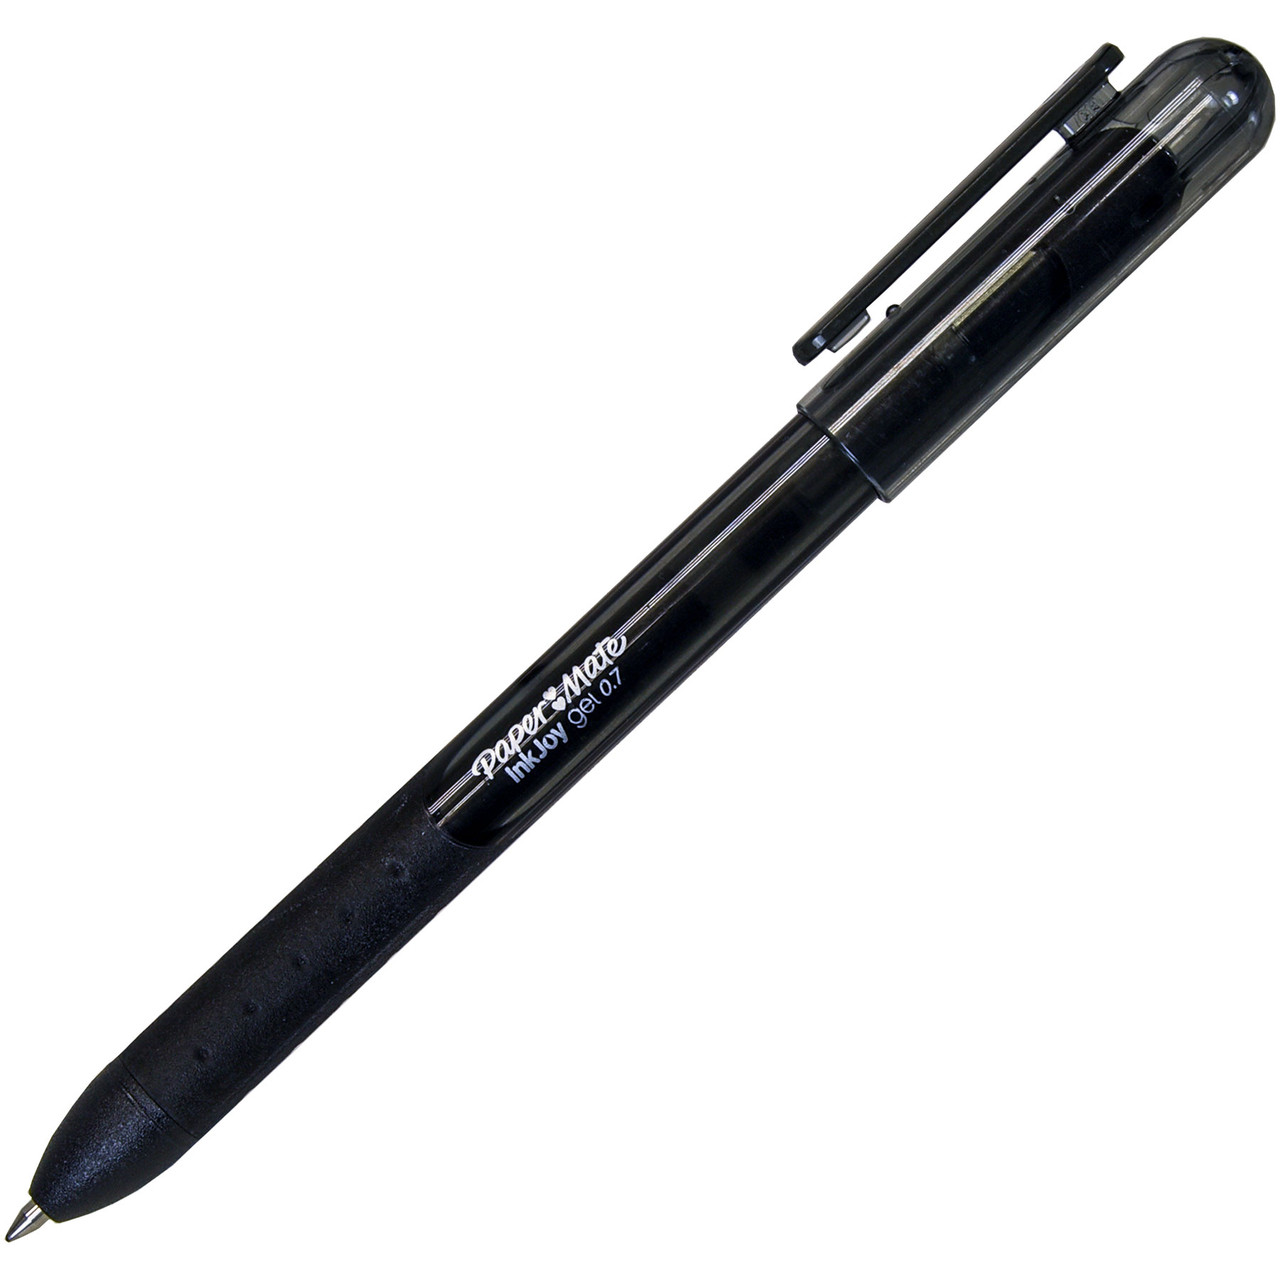 Paper Mate Inkjoy Gel Pens .7mm 6/Pkg-Black, 1 count - QFC